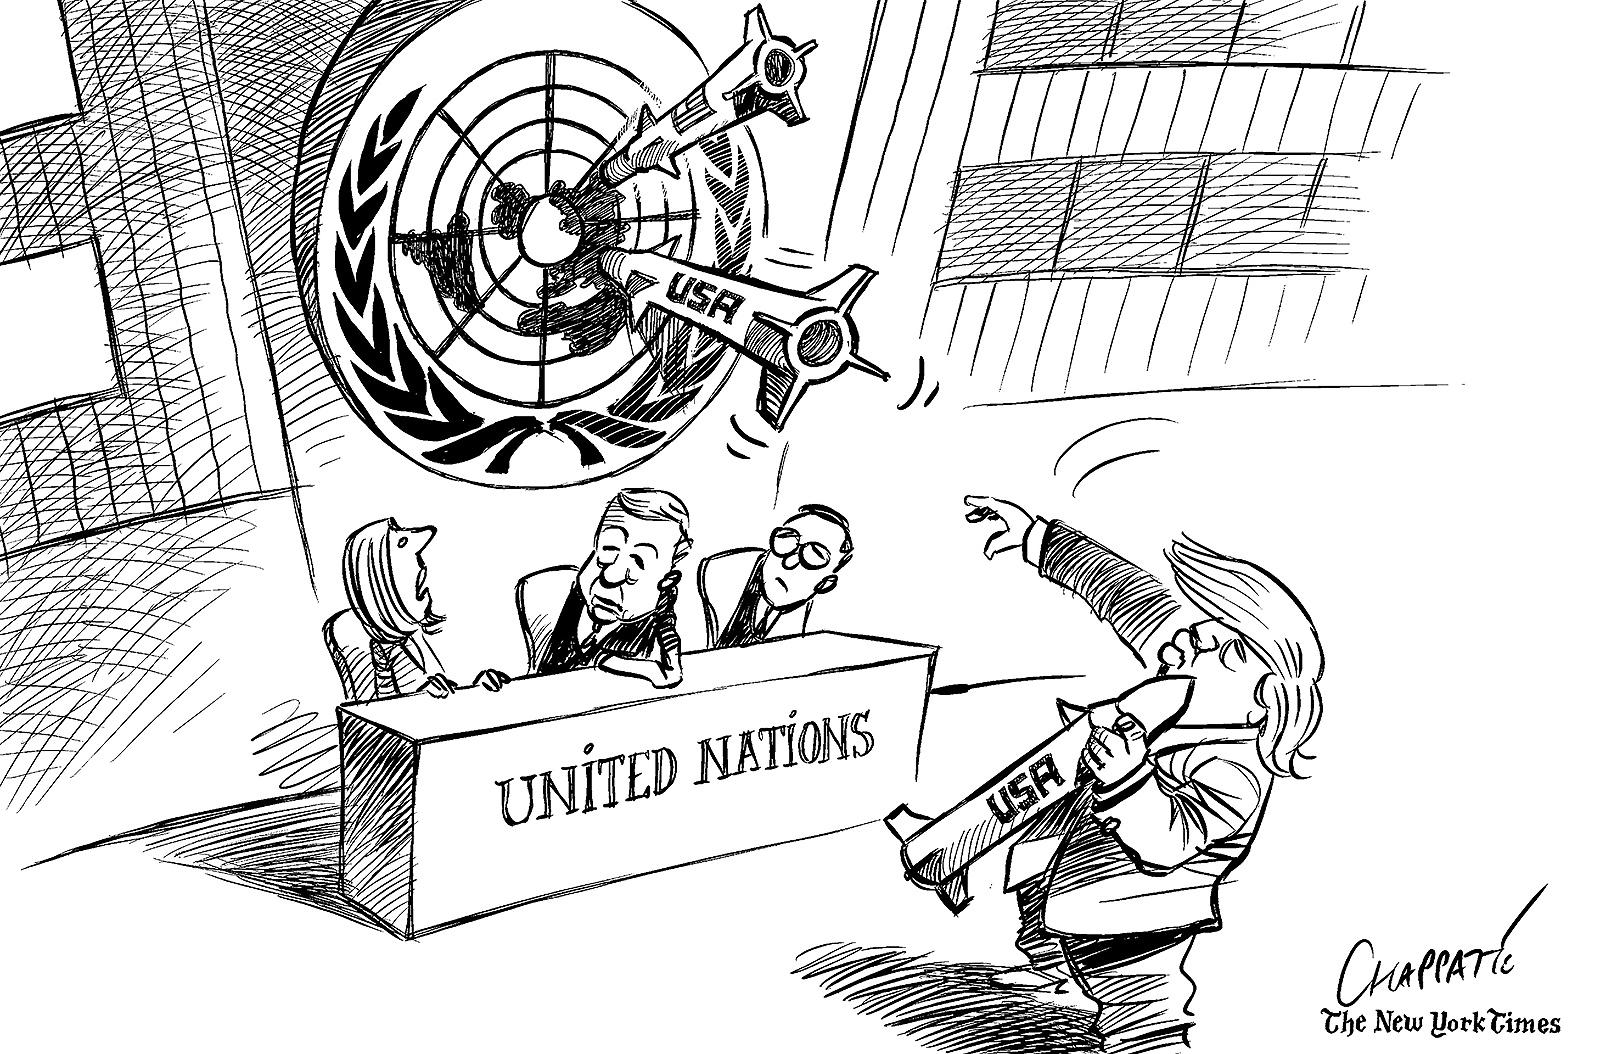 Trump’s war threats at the UN